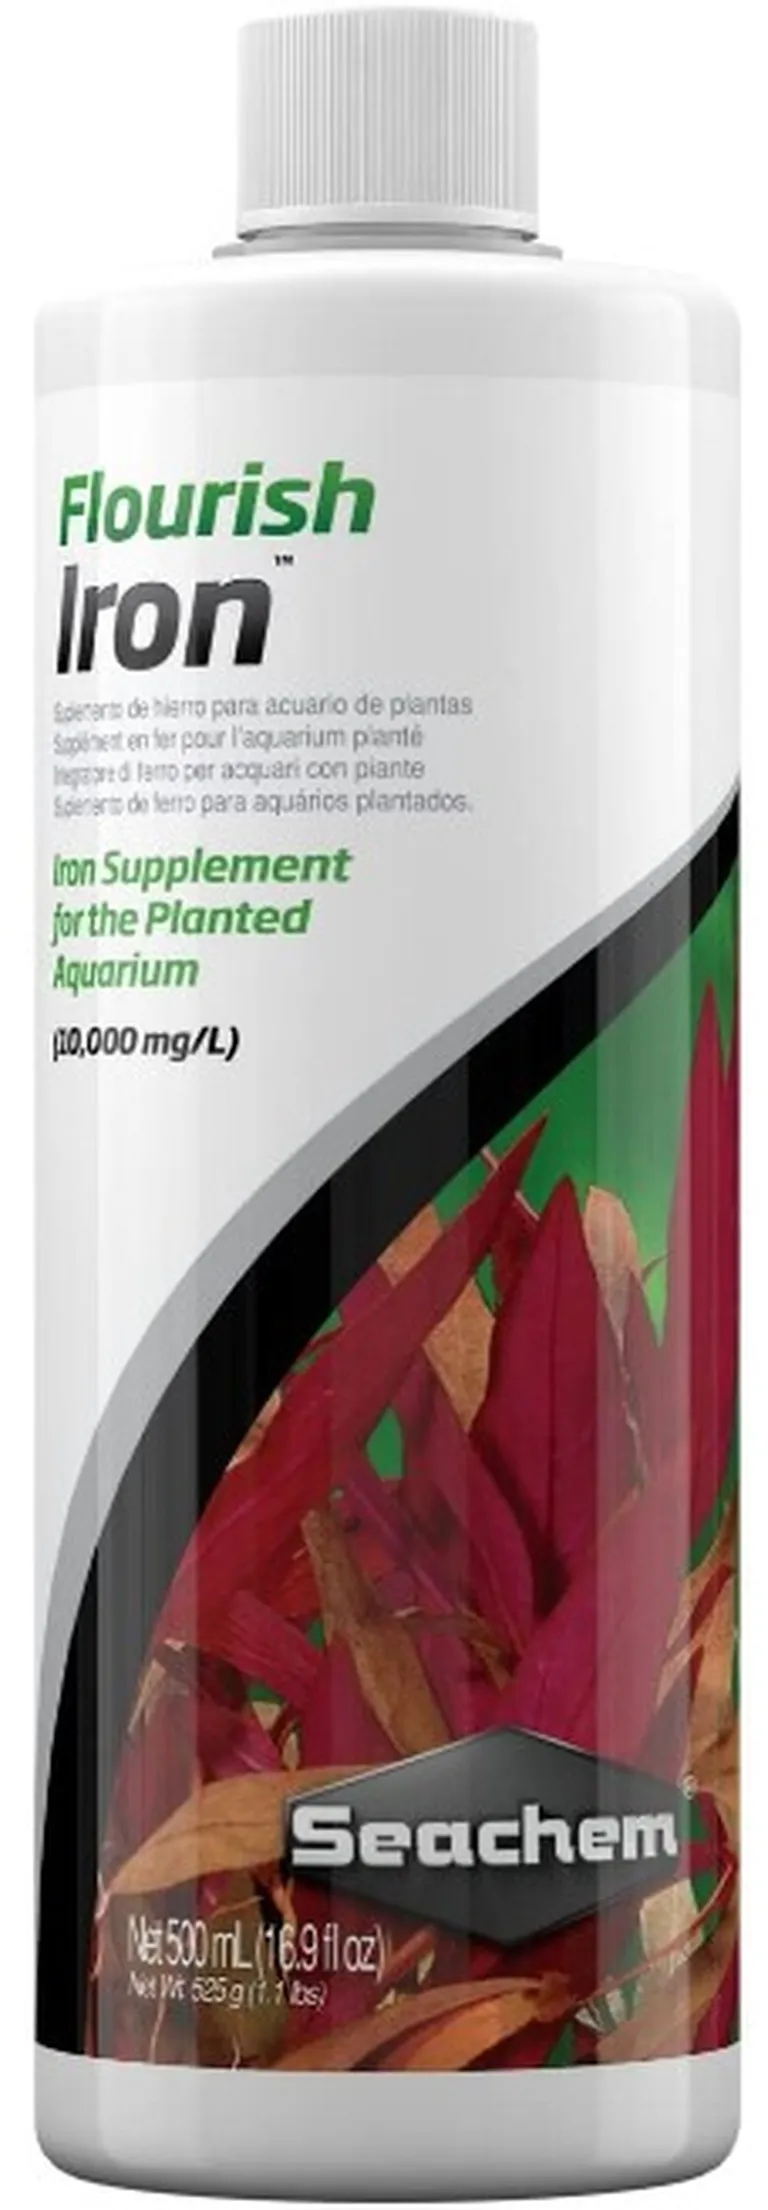 Seachem Flourish Iron Supplement for the Planted Aquarium Photo 1